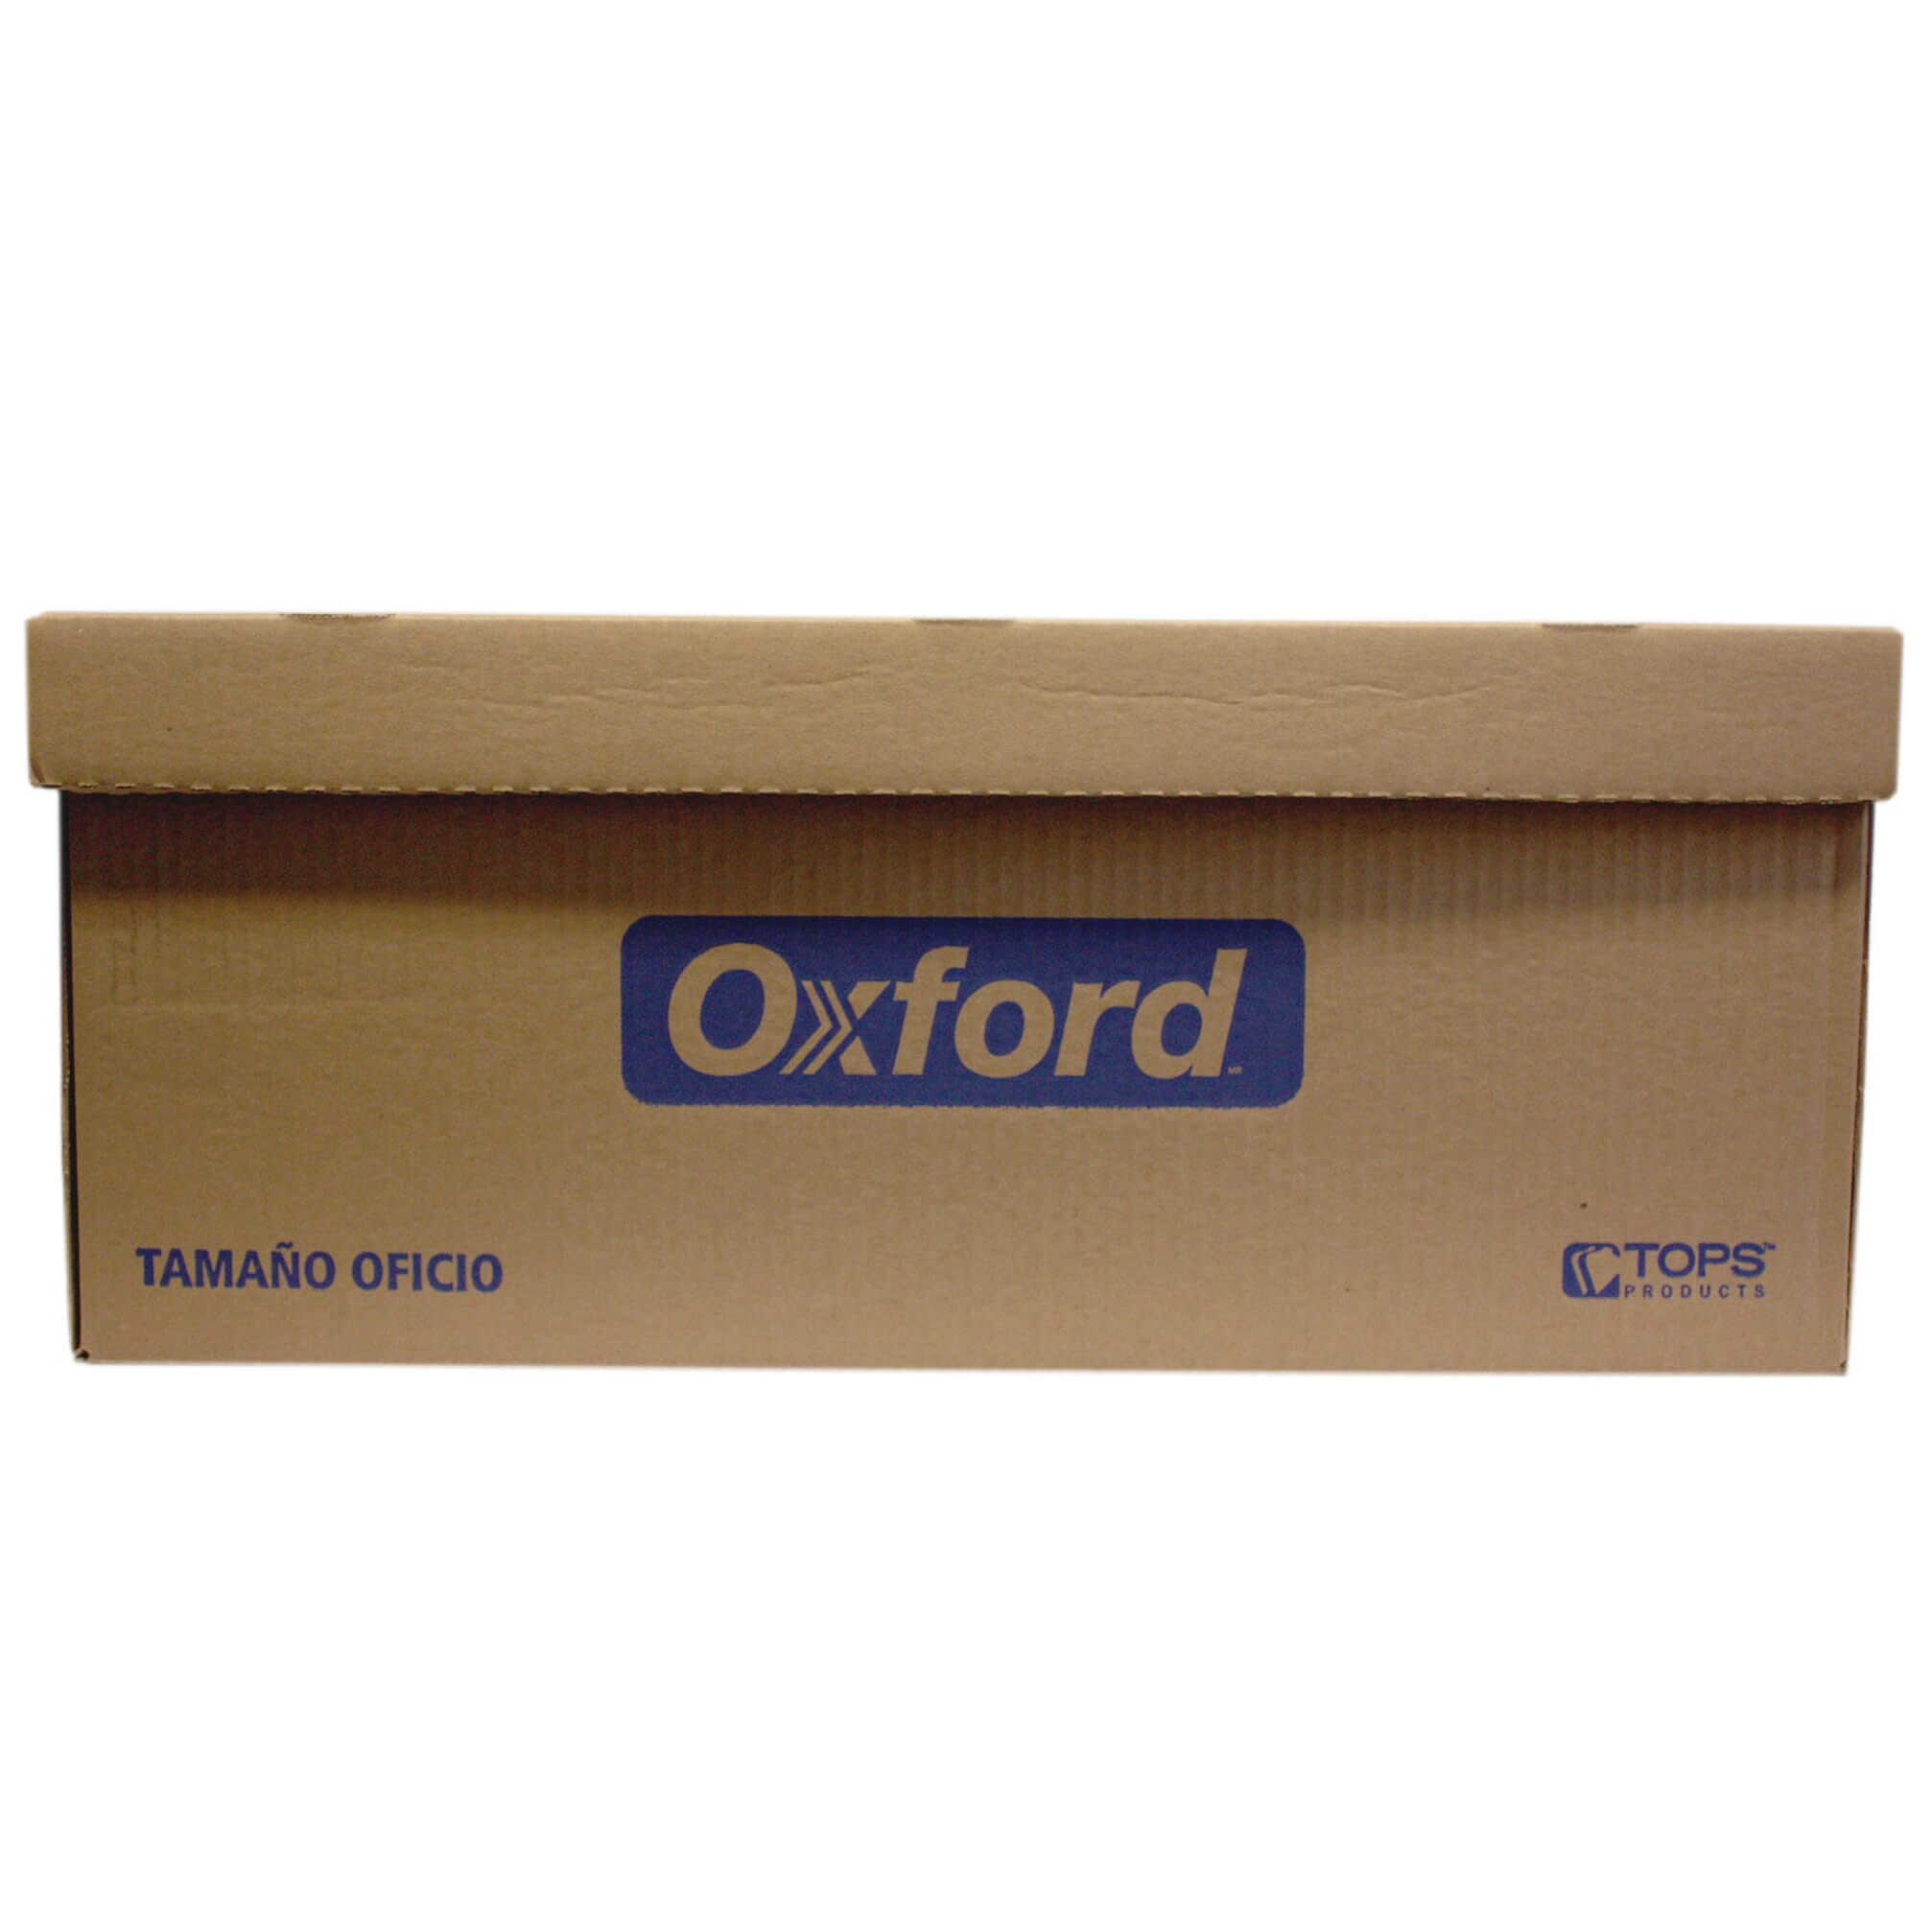 Caja para Archivo Básica OfficeMax, 50 x 50 x 50 cm., 1 pieza, Cajas